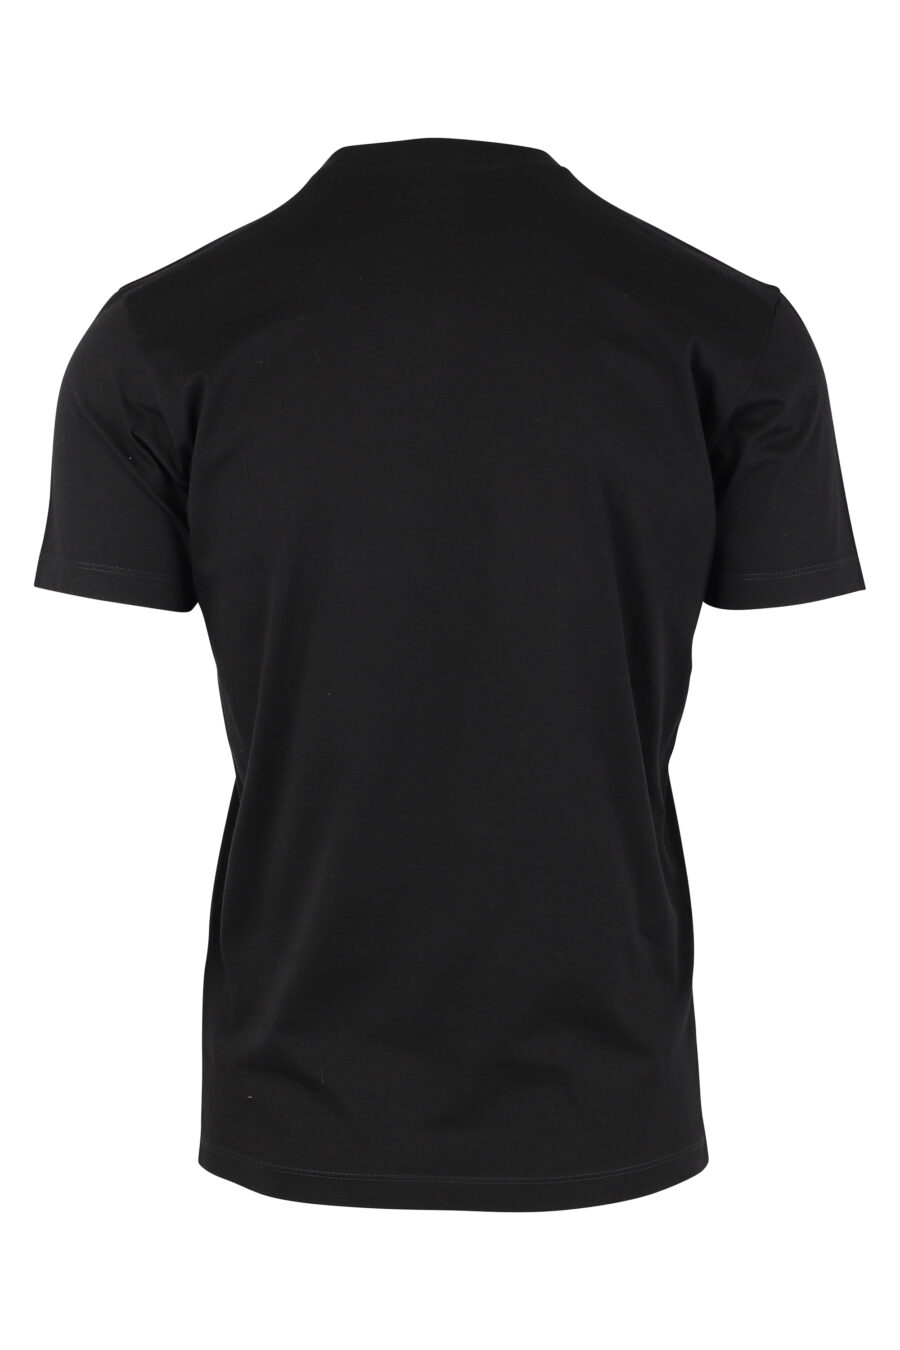 T-shirt noir avec minilogue "icon" - IMG 9767